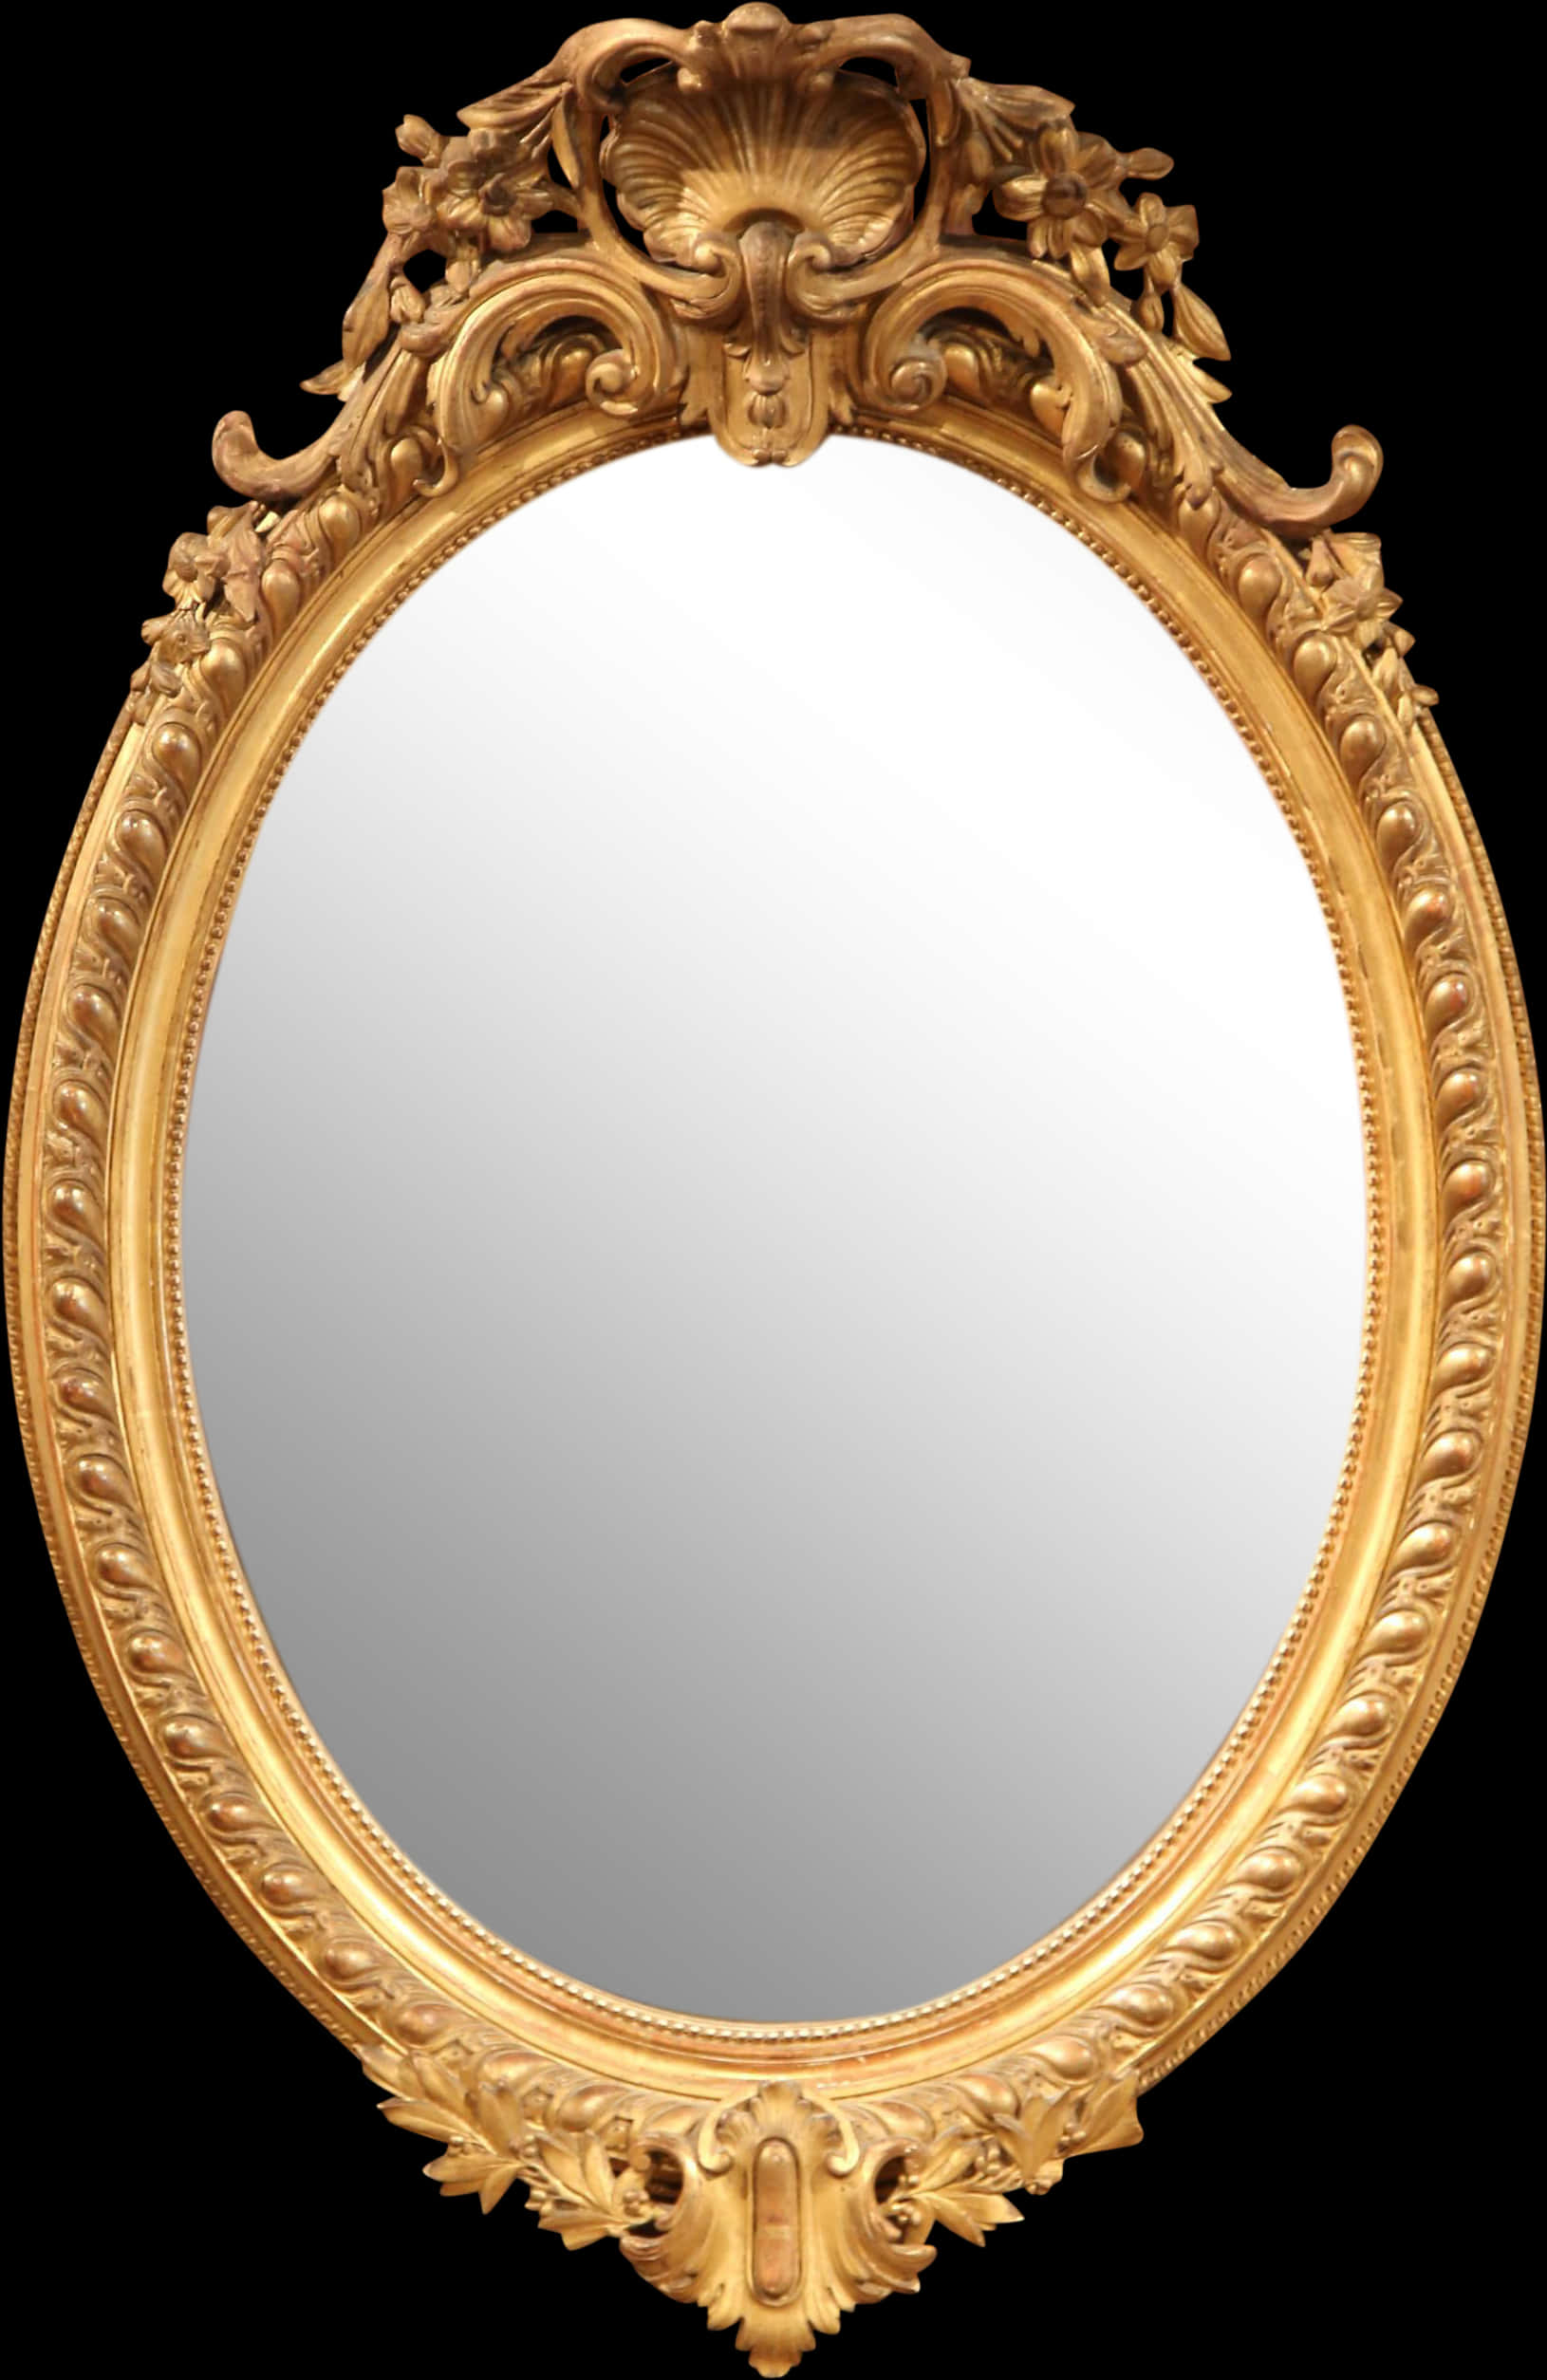 Ornate Golden Frame Mirror.jpg PNG